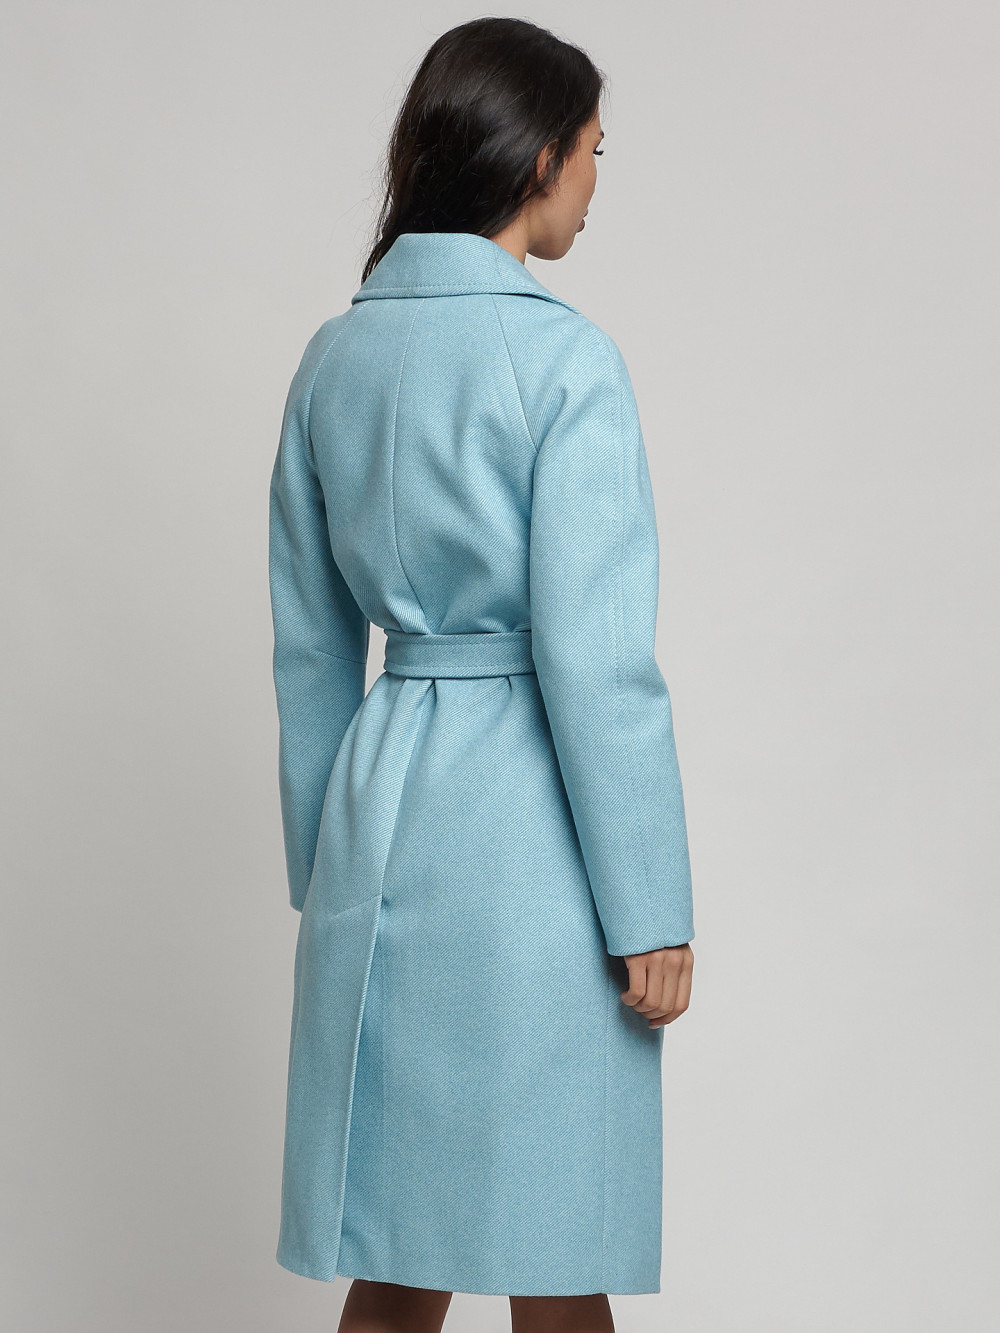 Пальто женское MTFORCE 4263 бирюзовое 42 RU